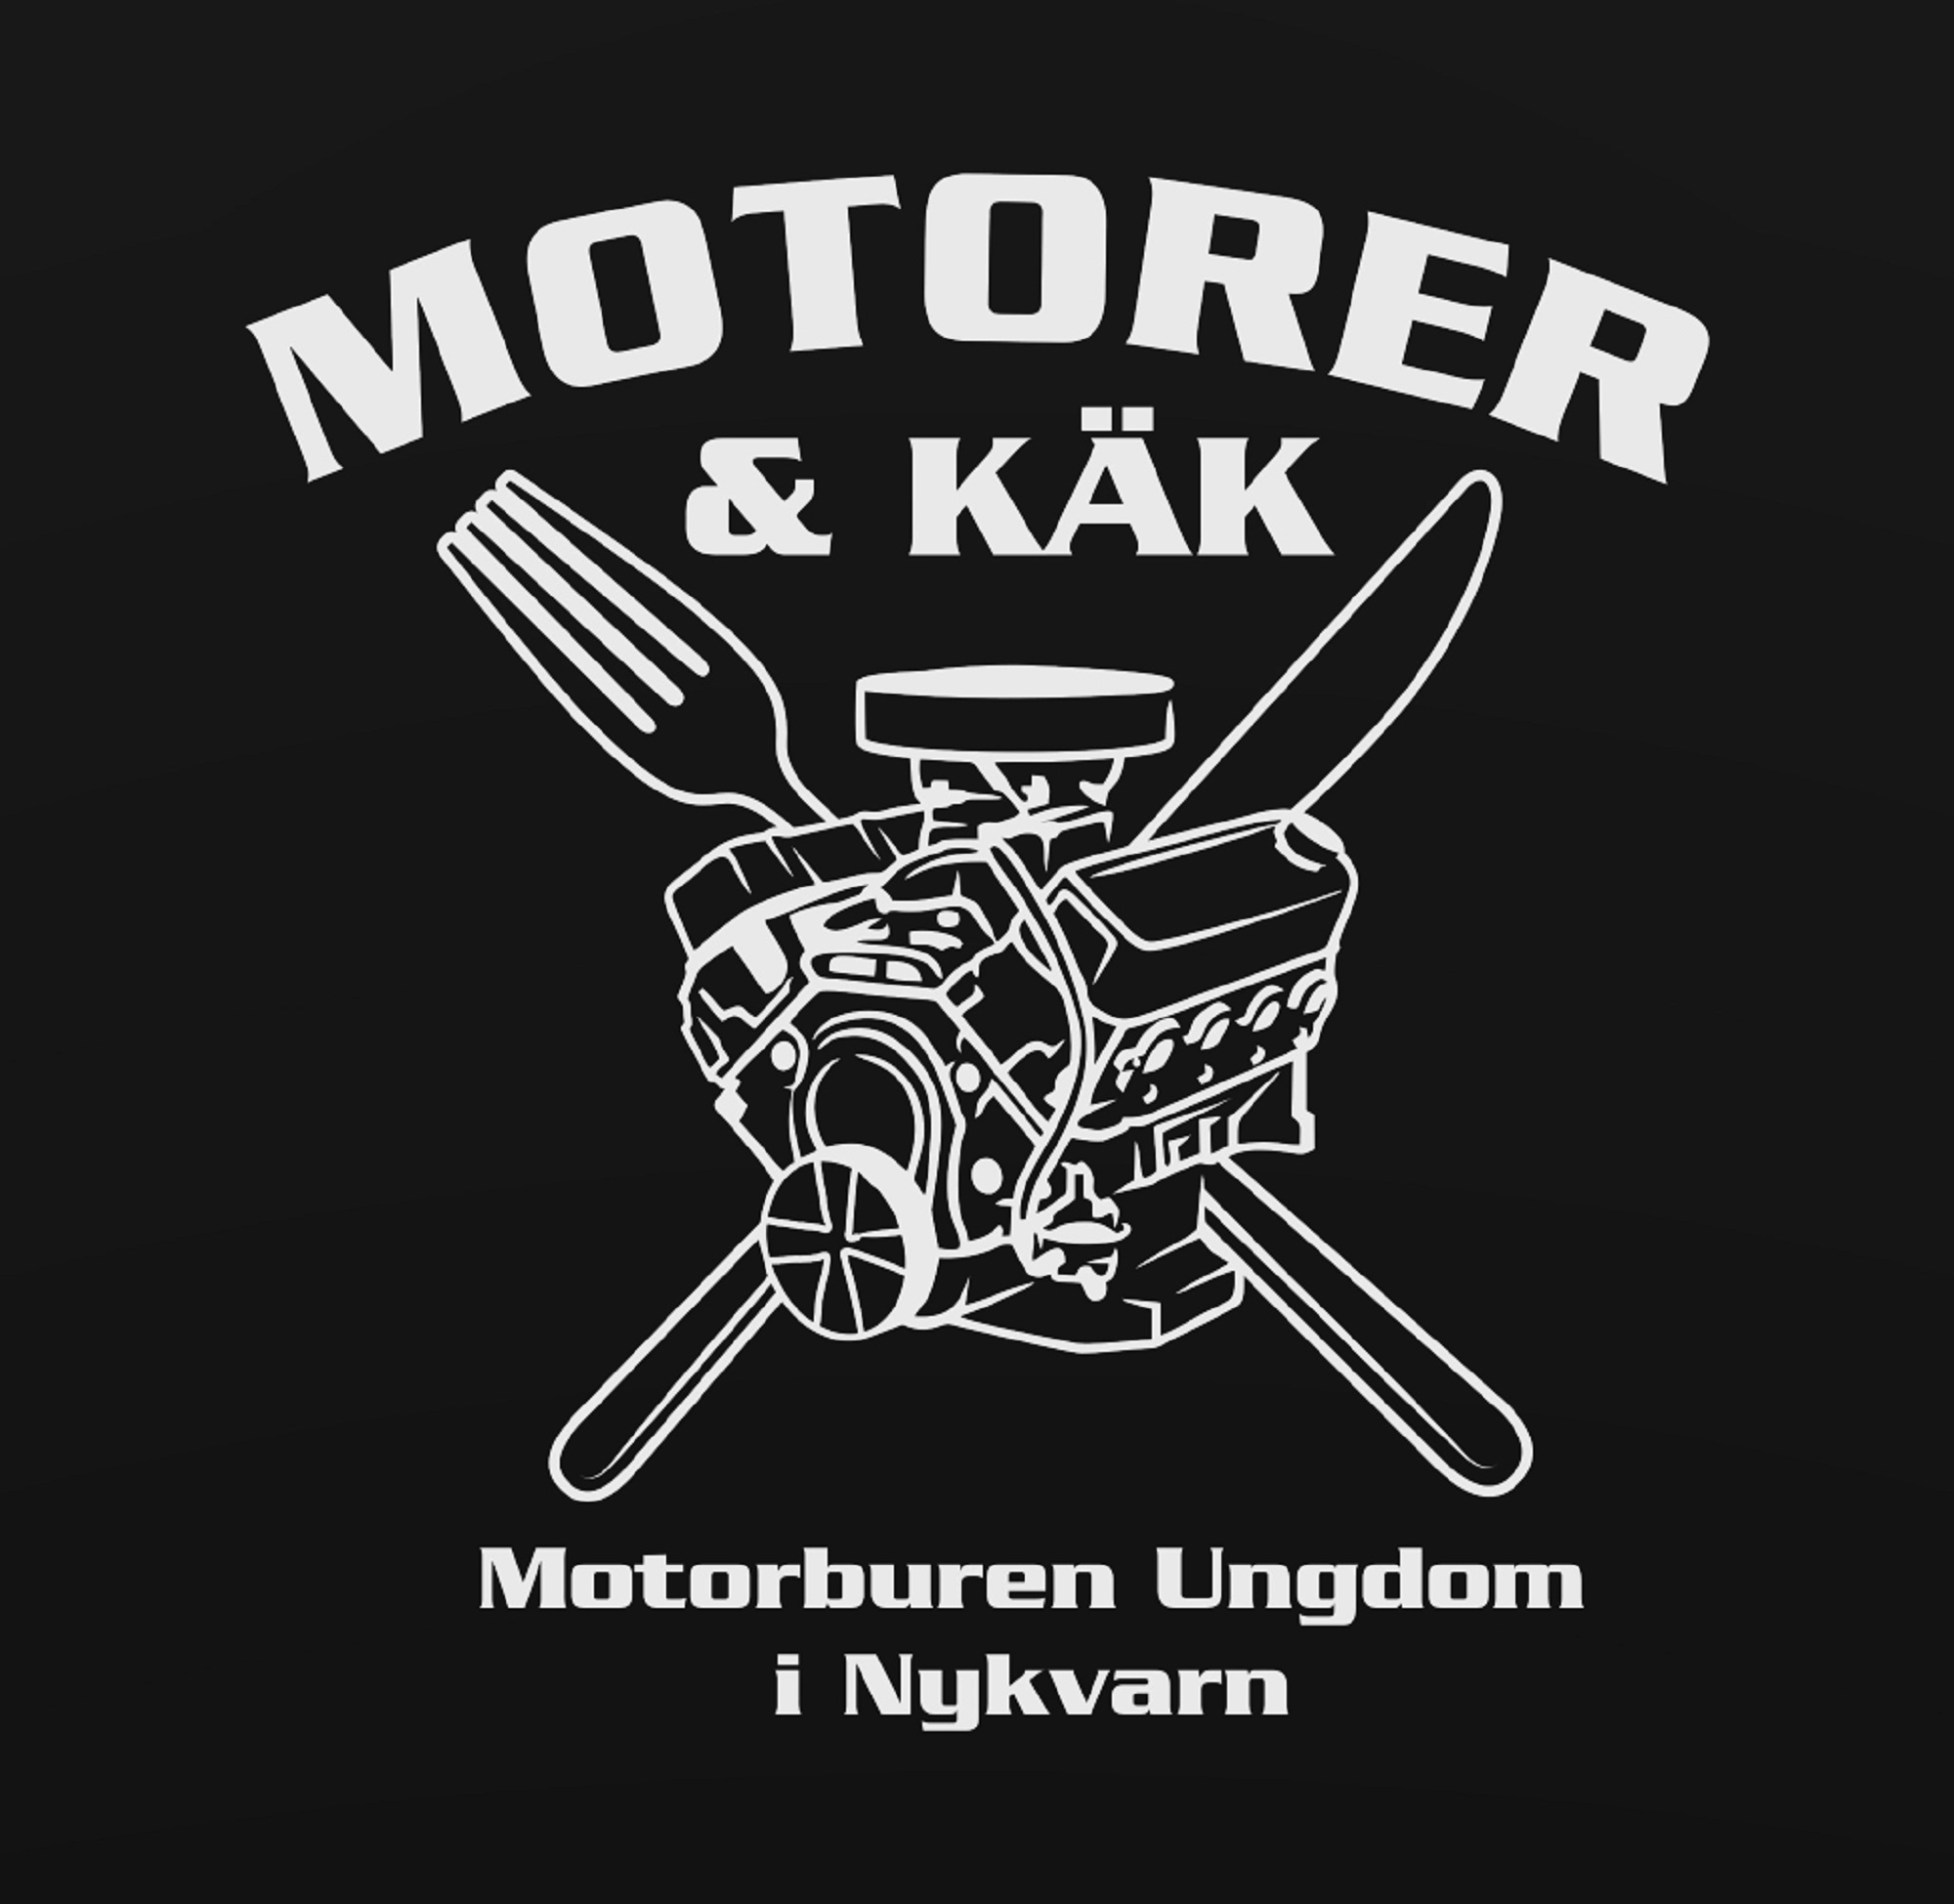 MOTORER & KÄK Motorburen Ungdom i Nykvarn